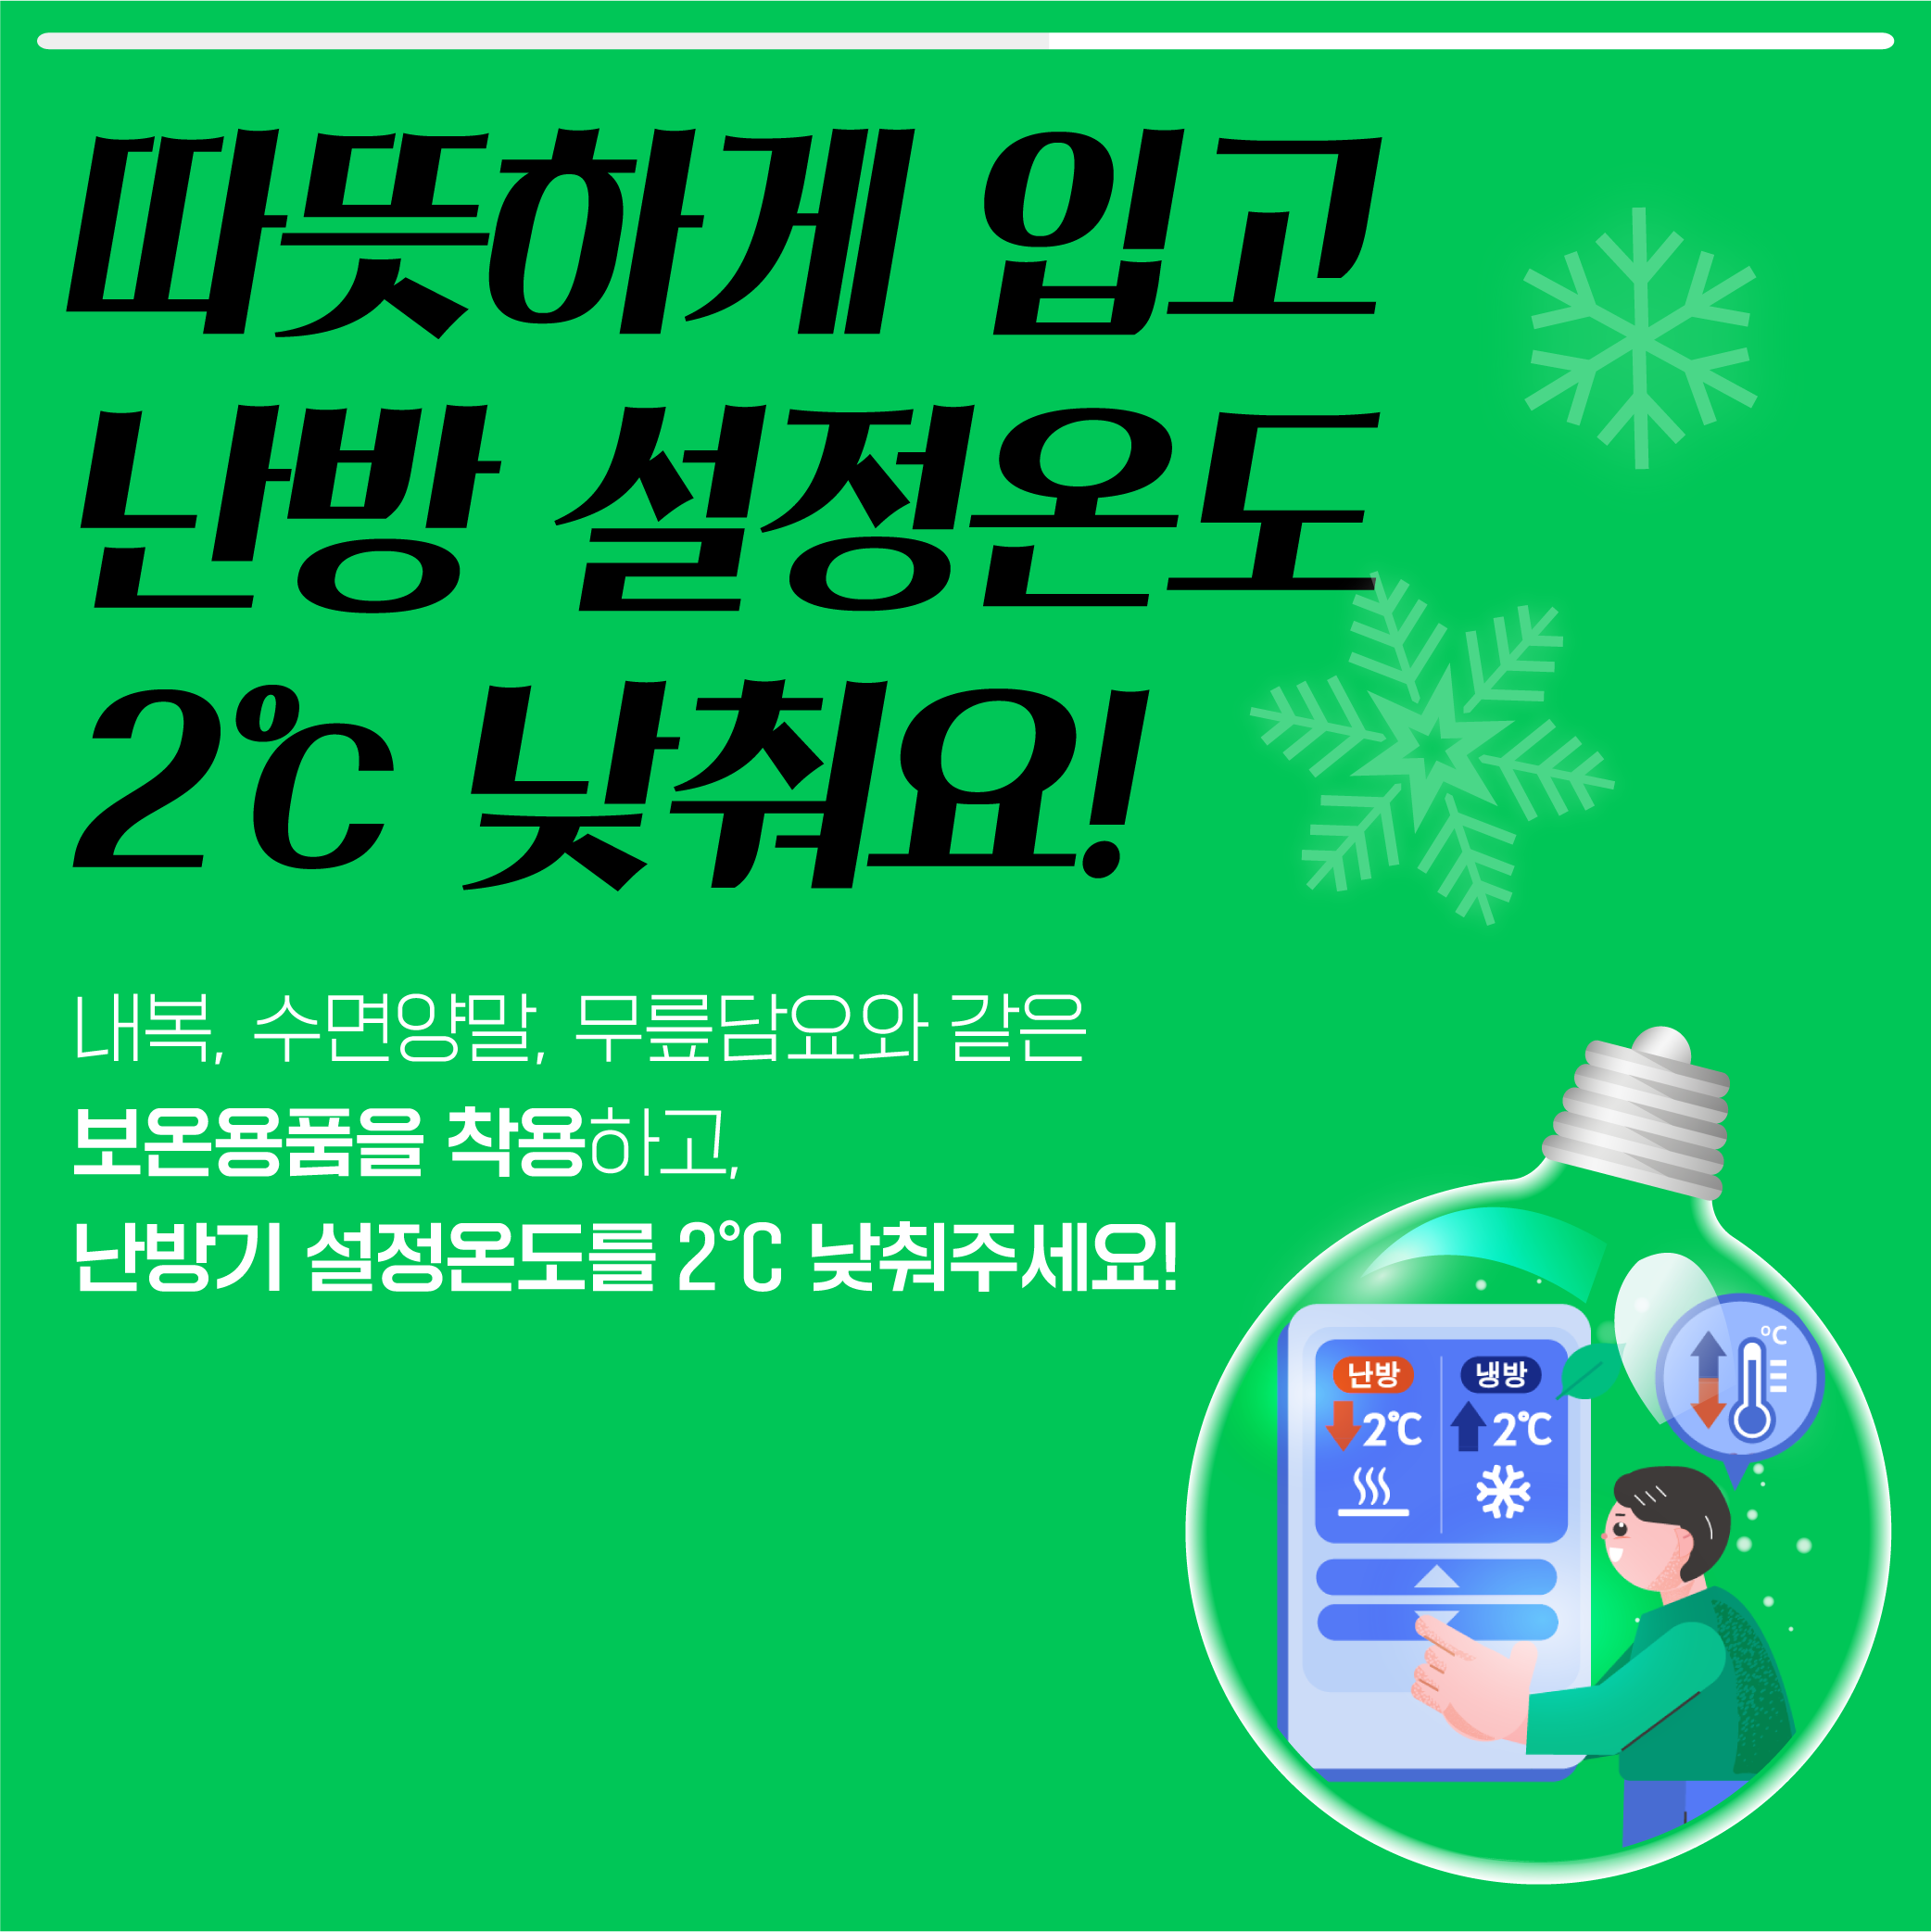 동절기 탄소중립 실천 카드뉴스_1.png